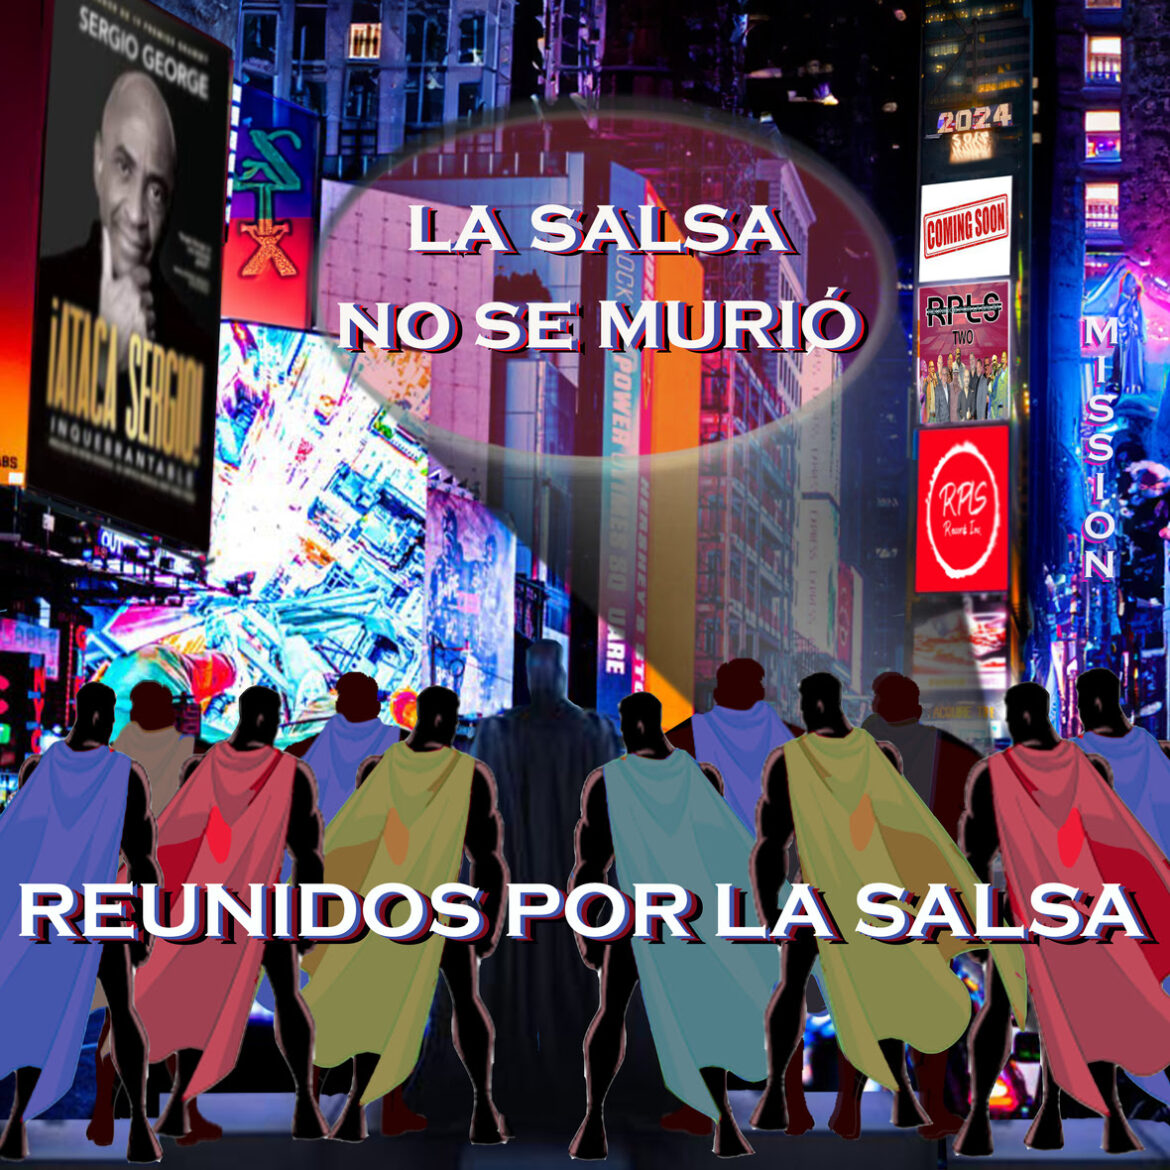 Reunidos Por La Salsa lanzan su nuevo sencillo “La Salsa No Se Murió”